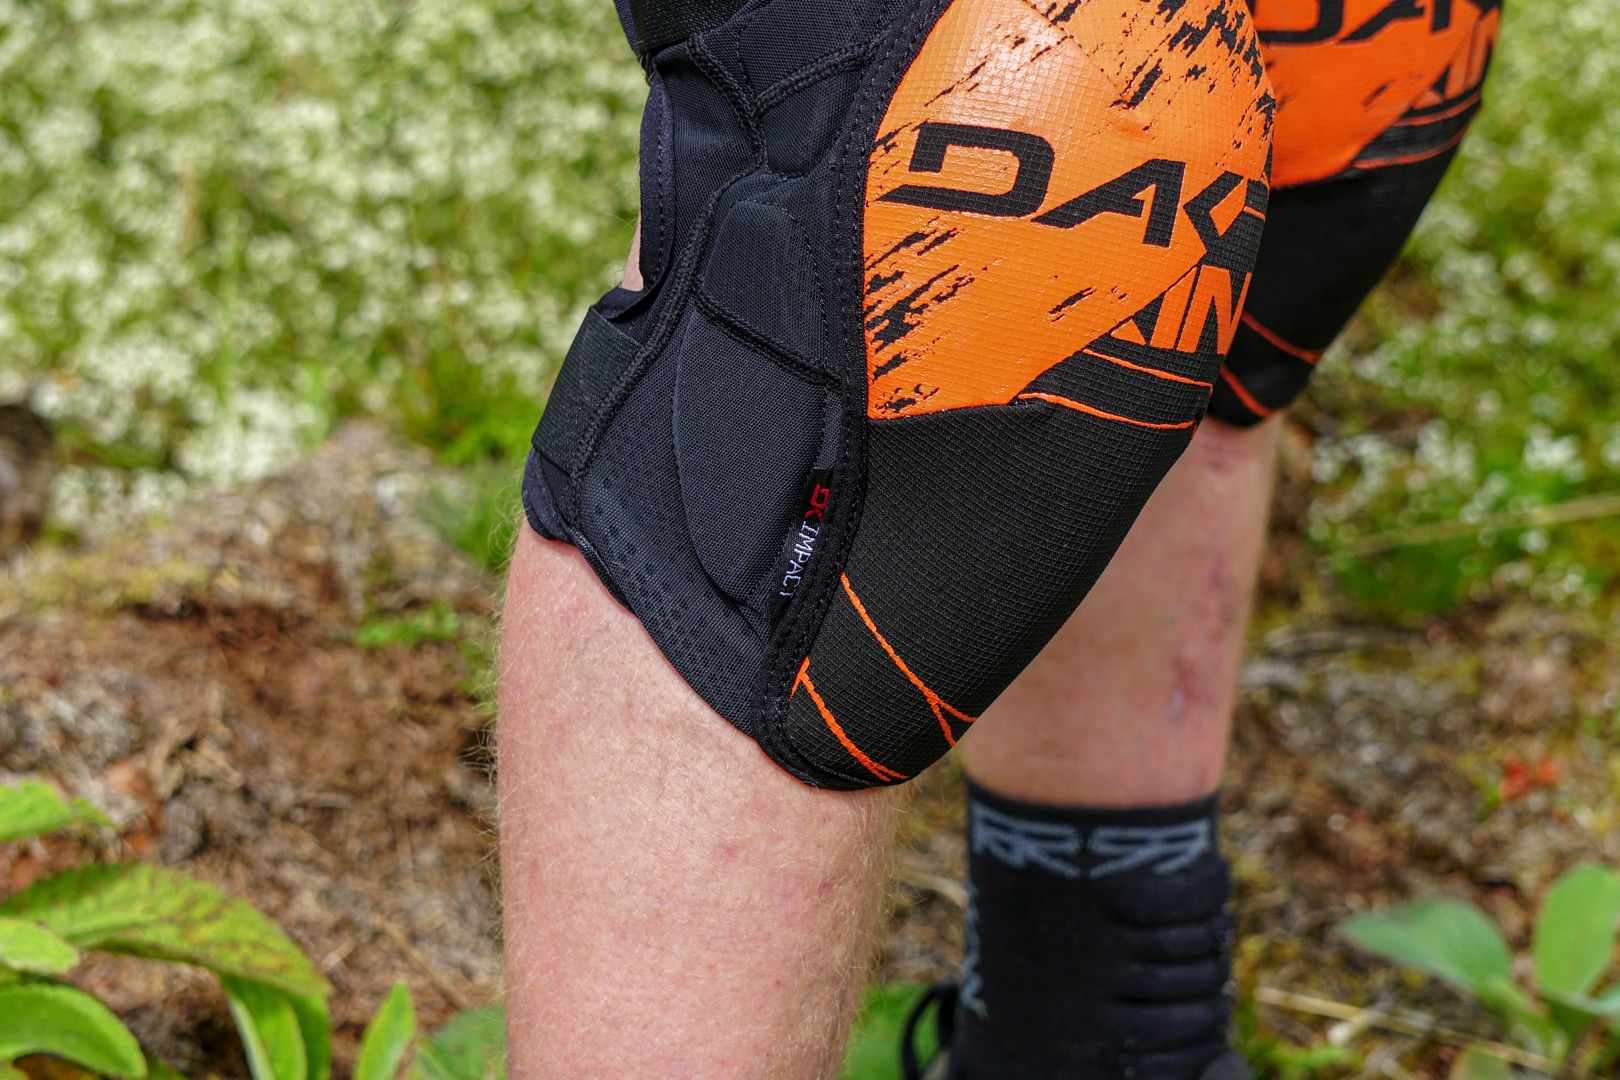 Slayer knee pad details